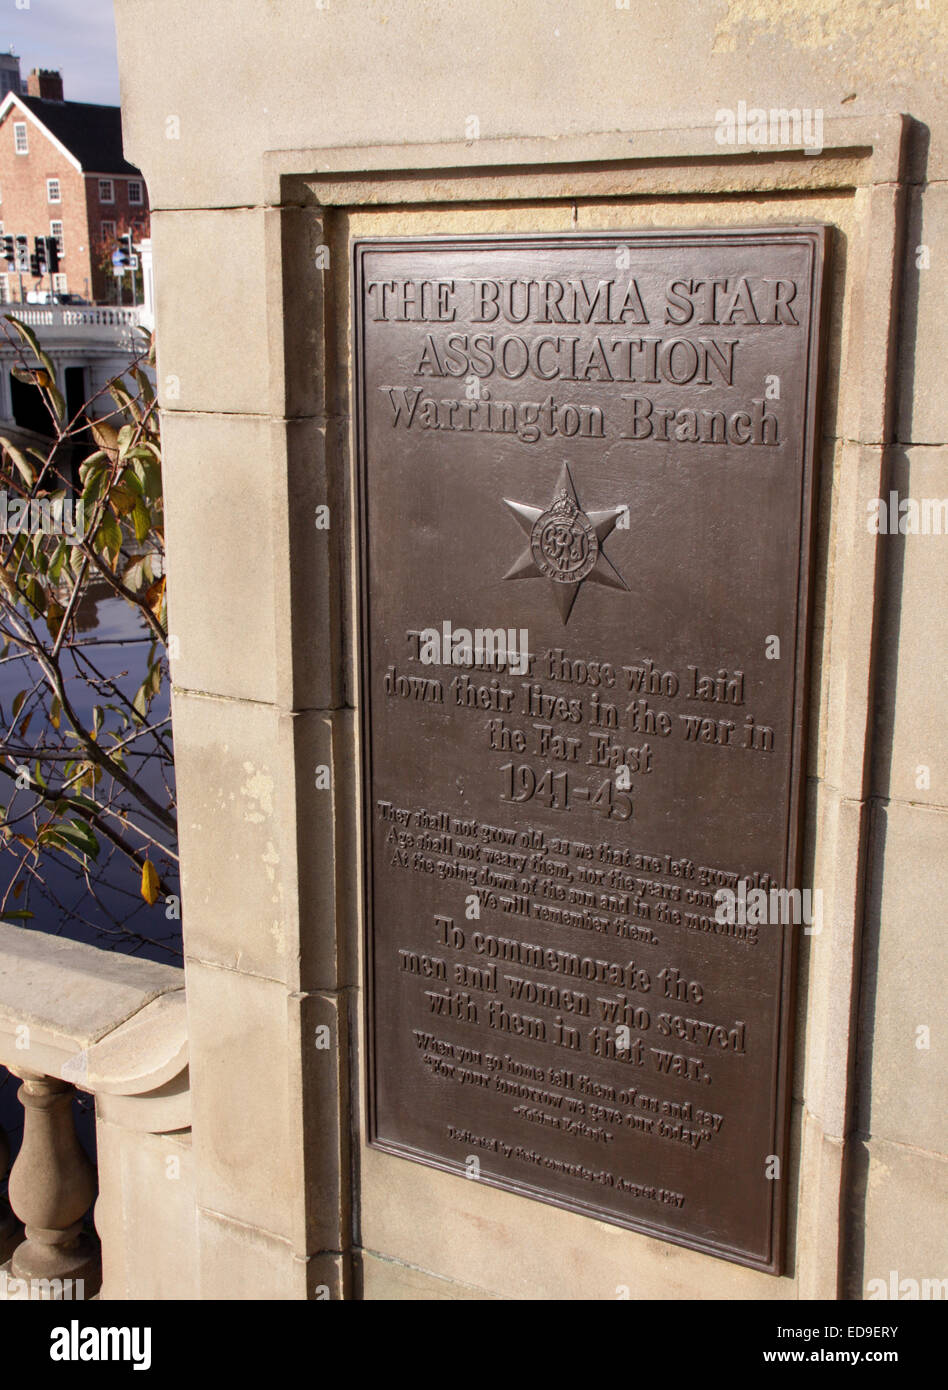 La Direction générale de l'Association étoiles Birmanie plaque de bronze à Warrington Bridgefoot Cénotaphe, Cheshire, England, UK Banque D'Images